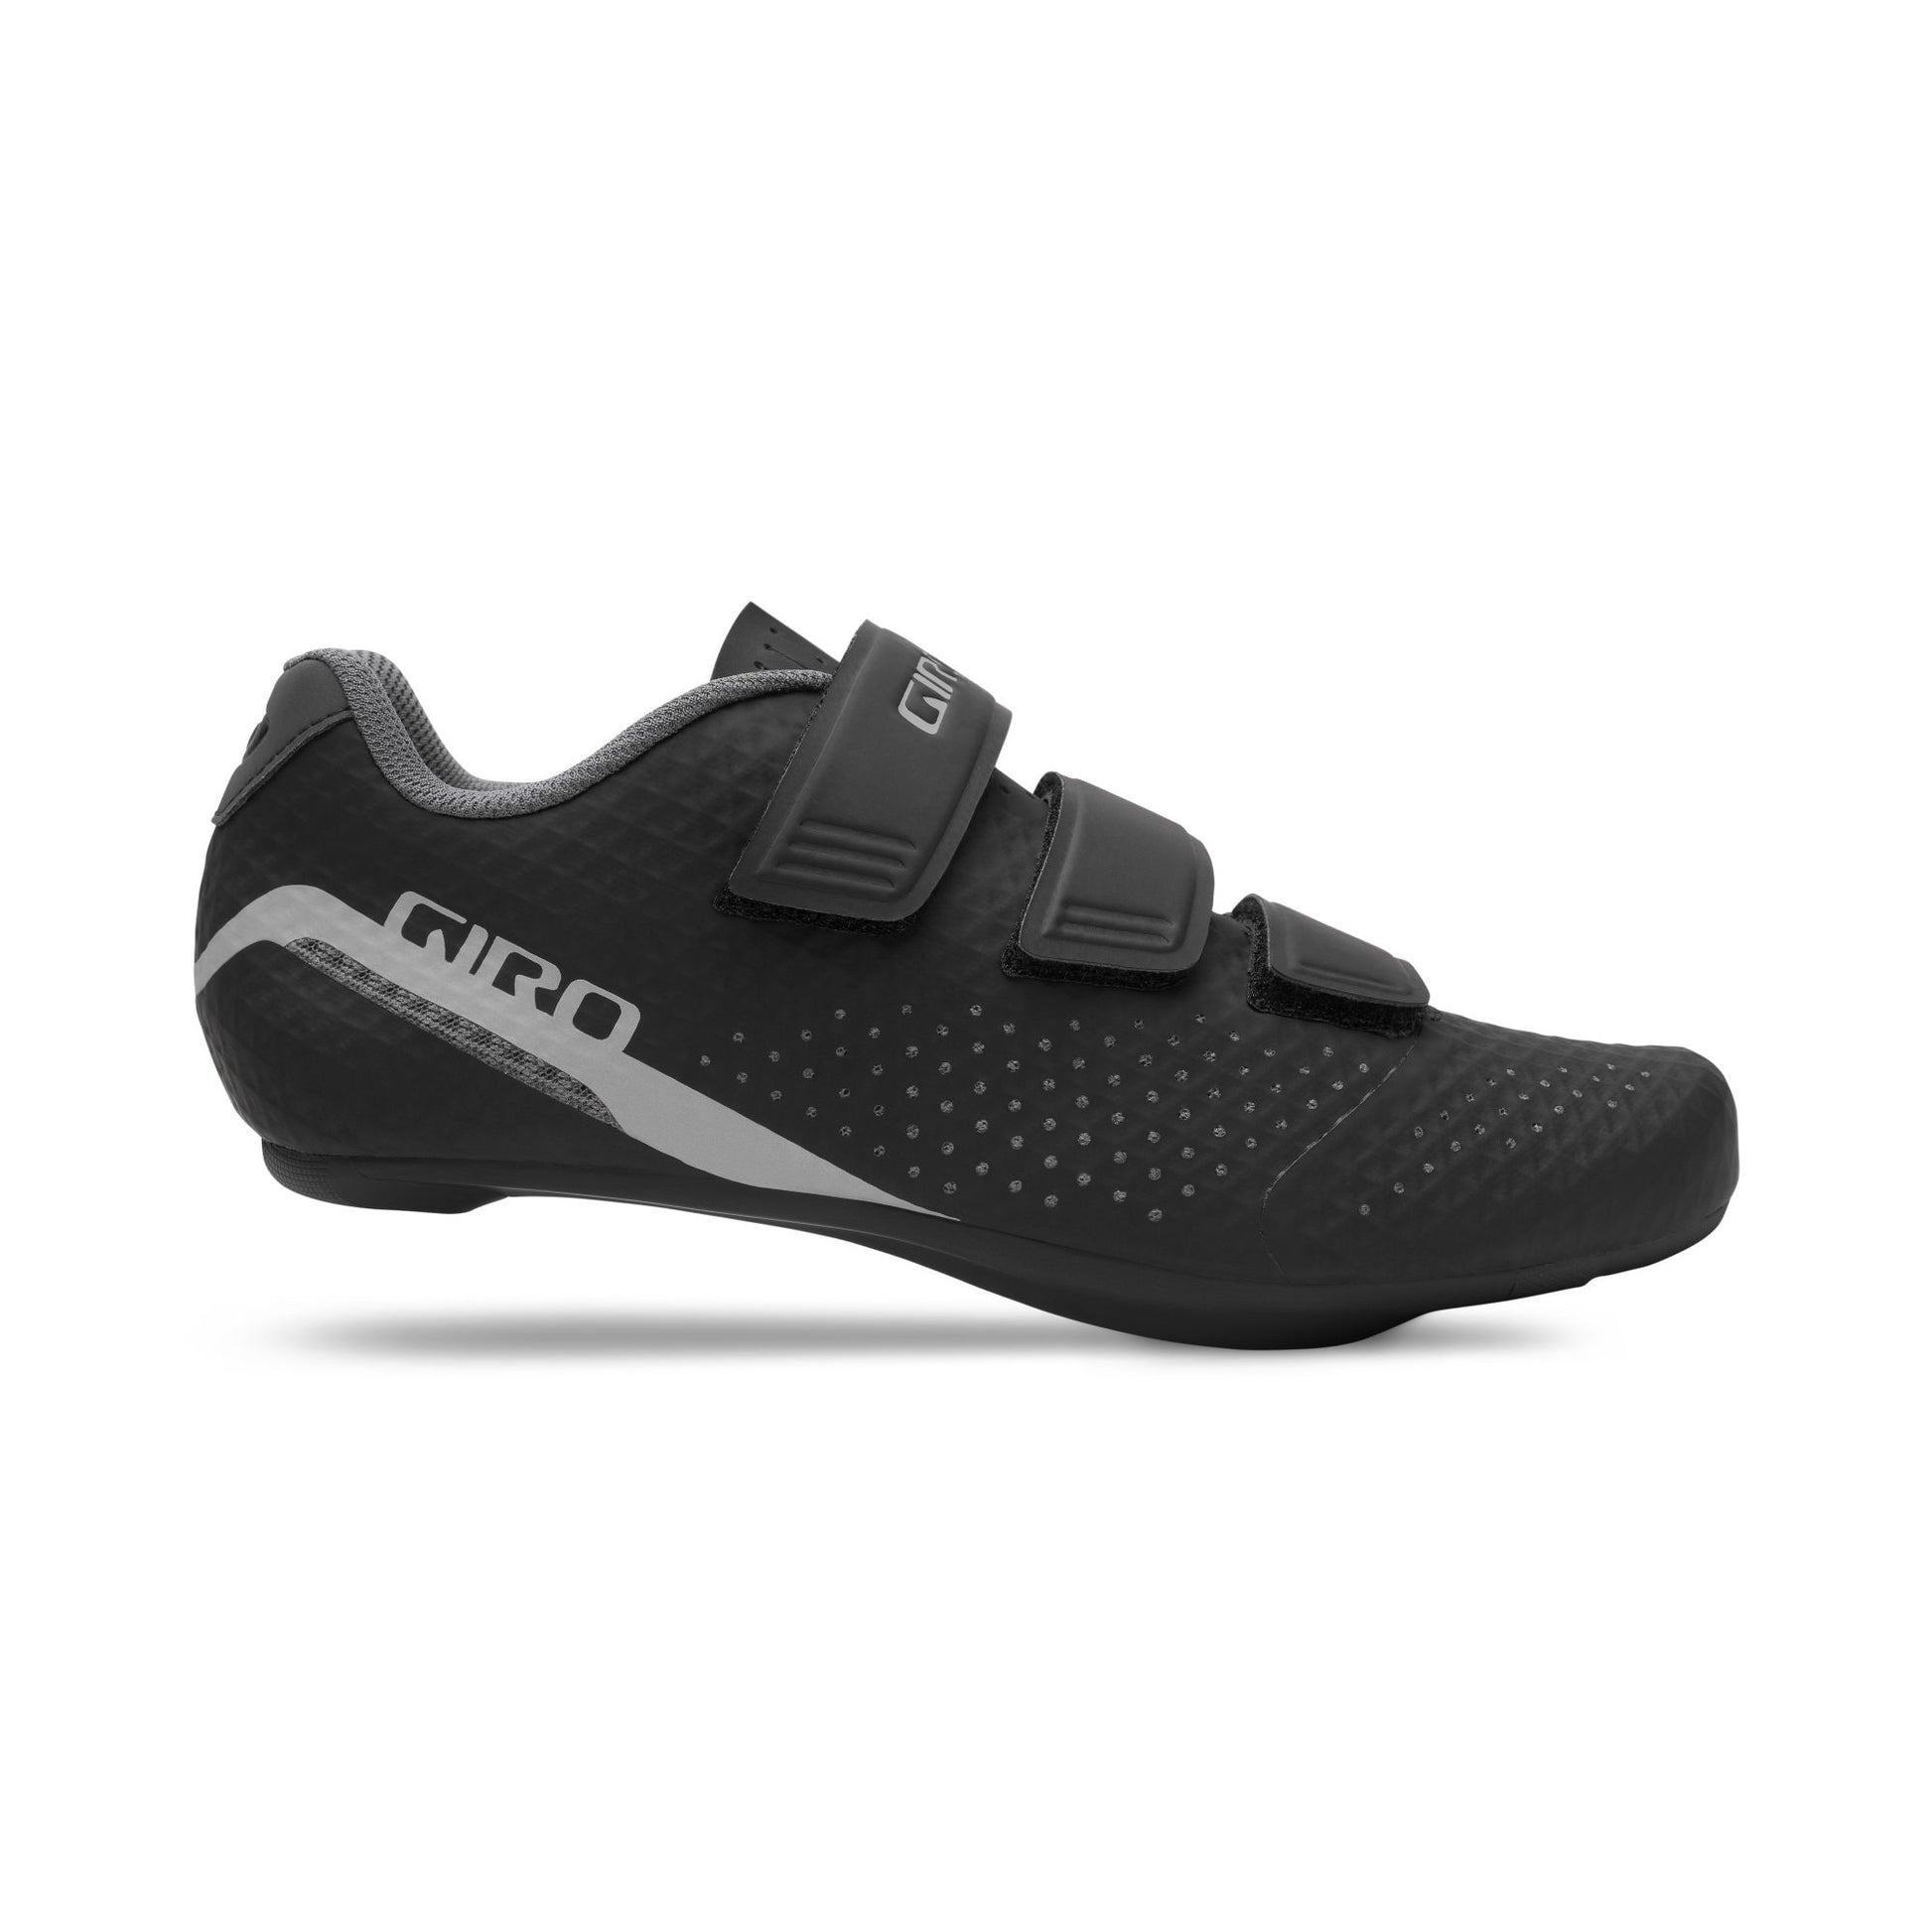 Giro Women's Stylus Shoe Black Bike Shoes